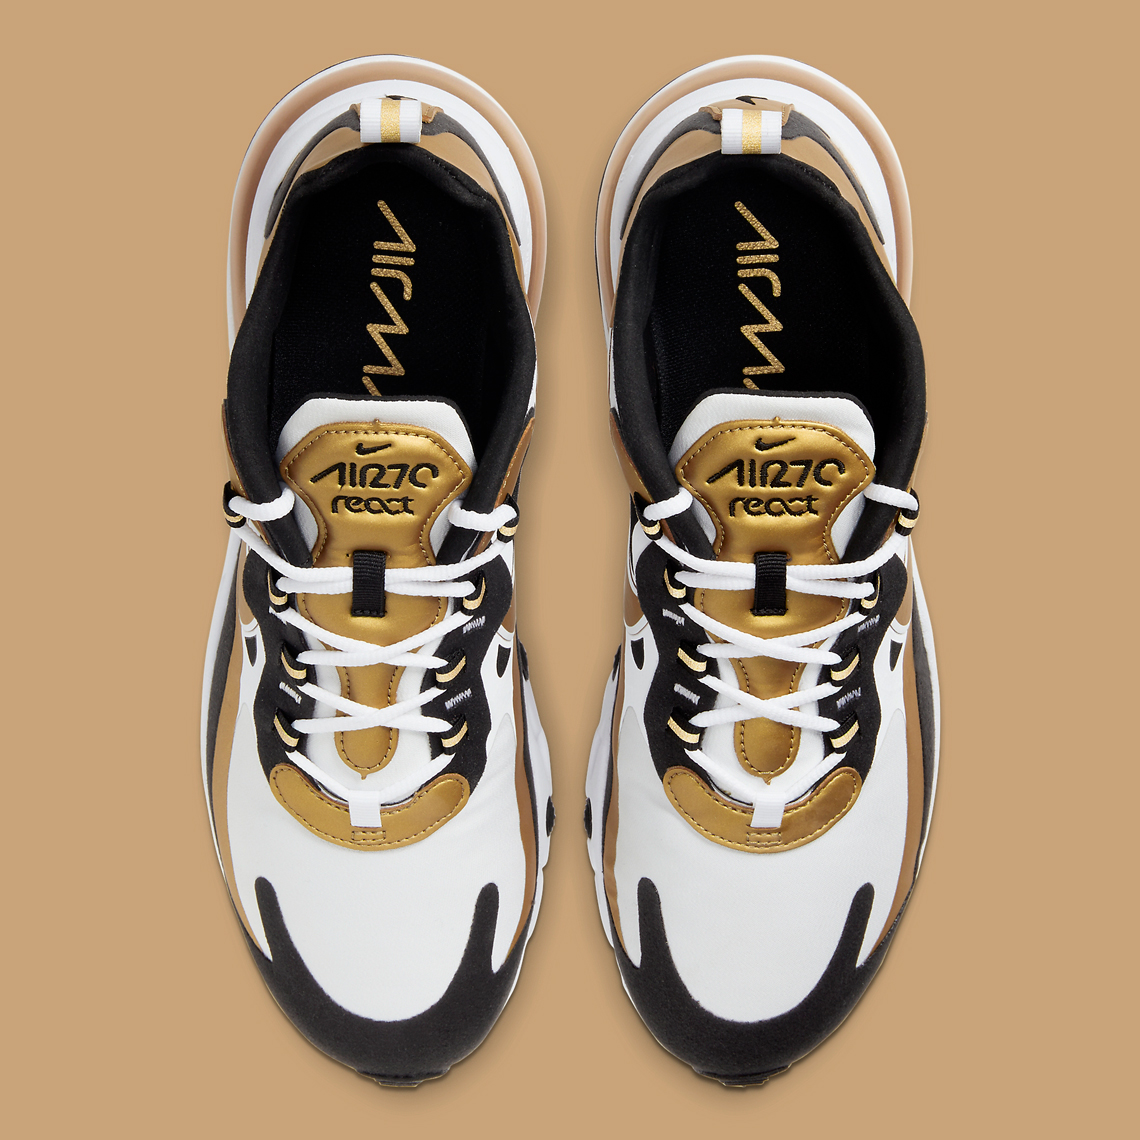 Nike Air Max 270 React Black Gold 